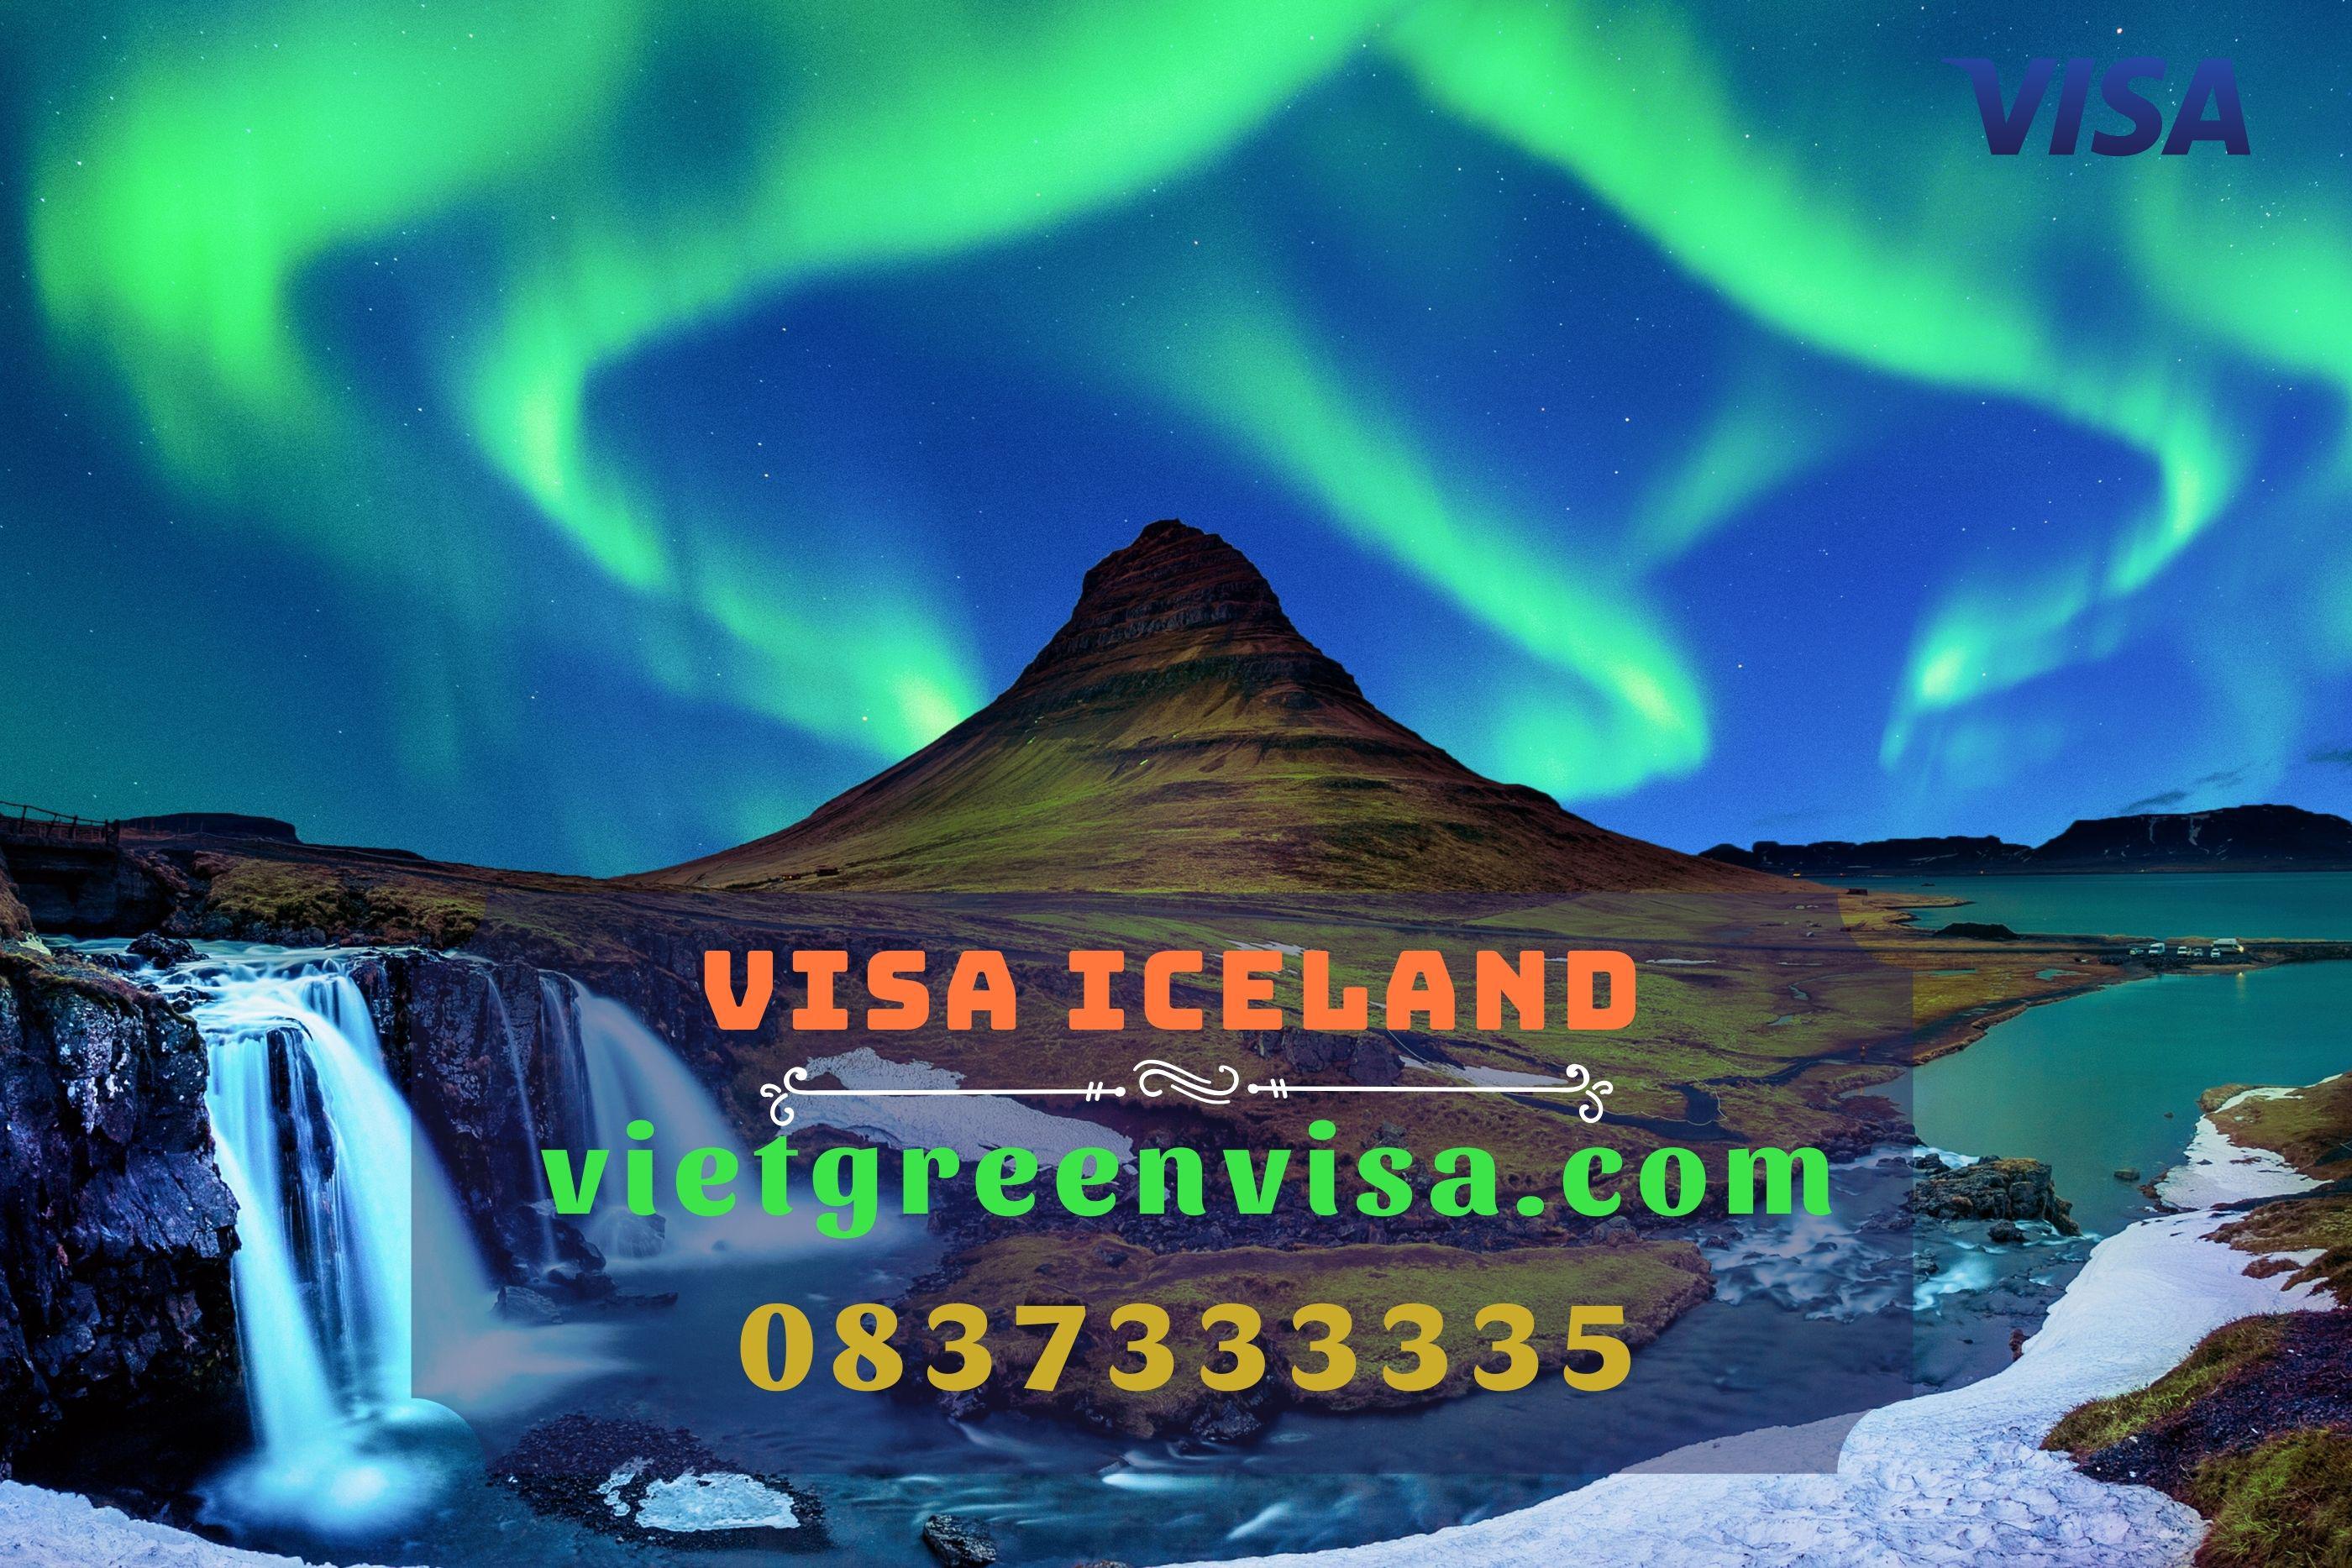 Kinh nghiệm xin visa Iceland hiệu quả và nhanh chóng